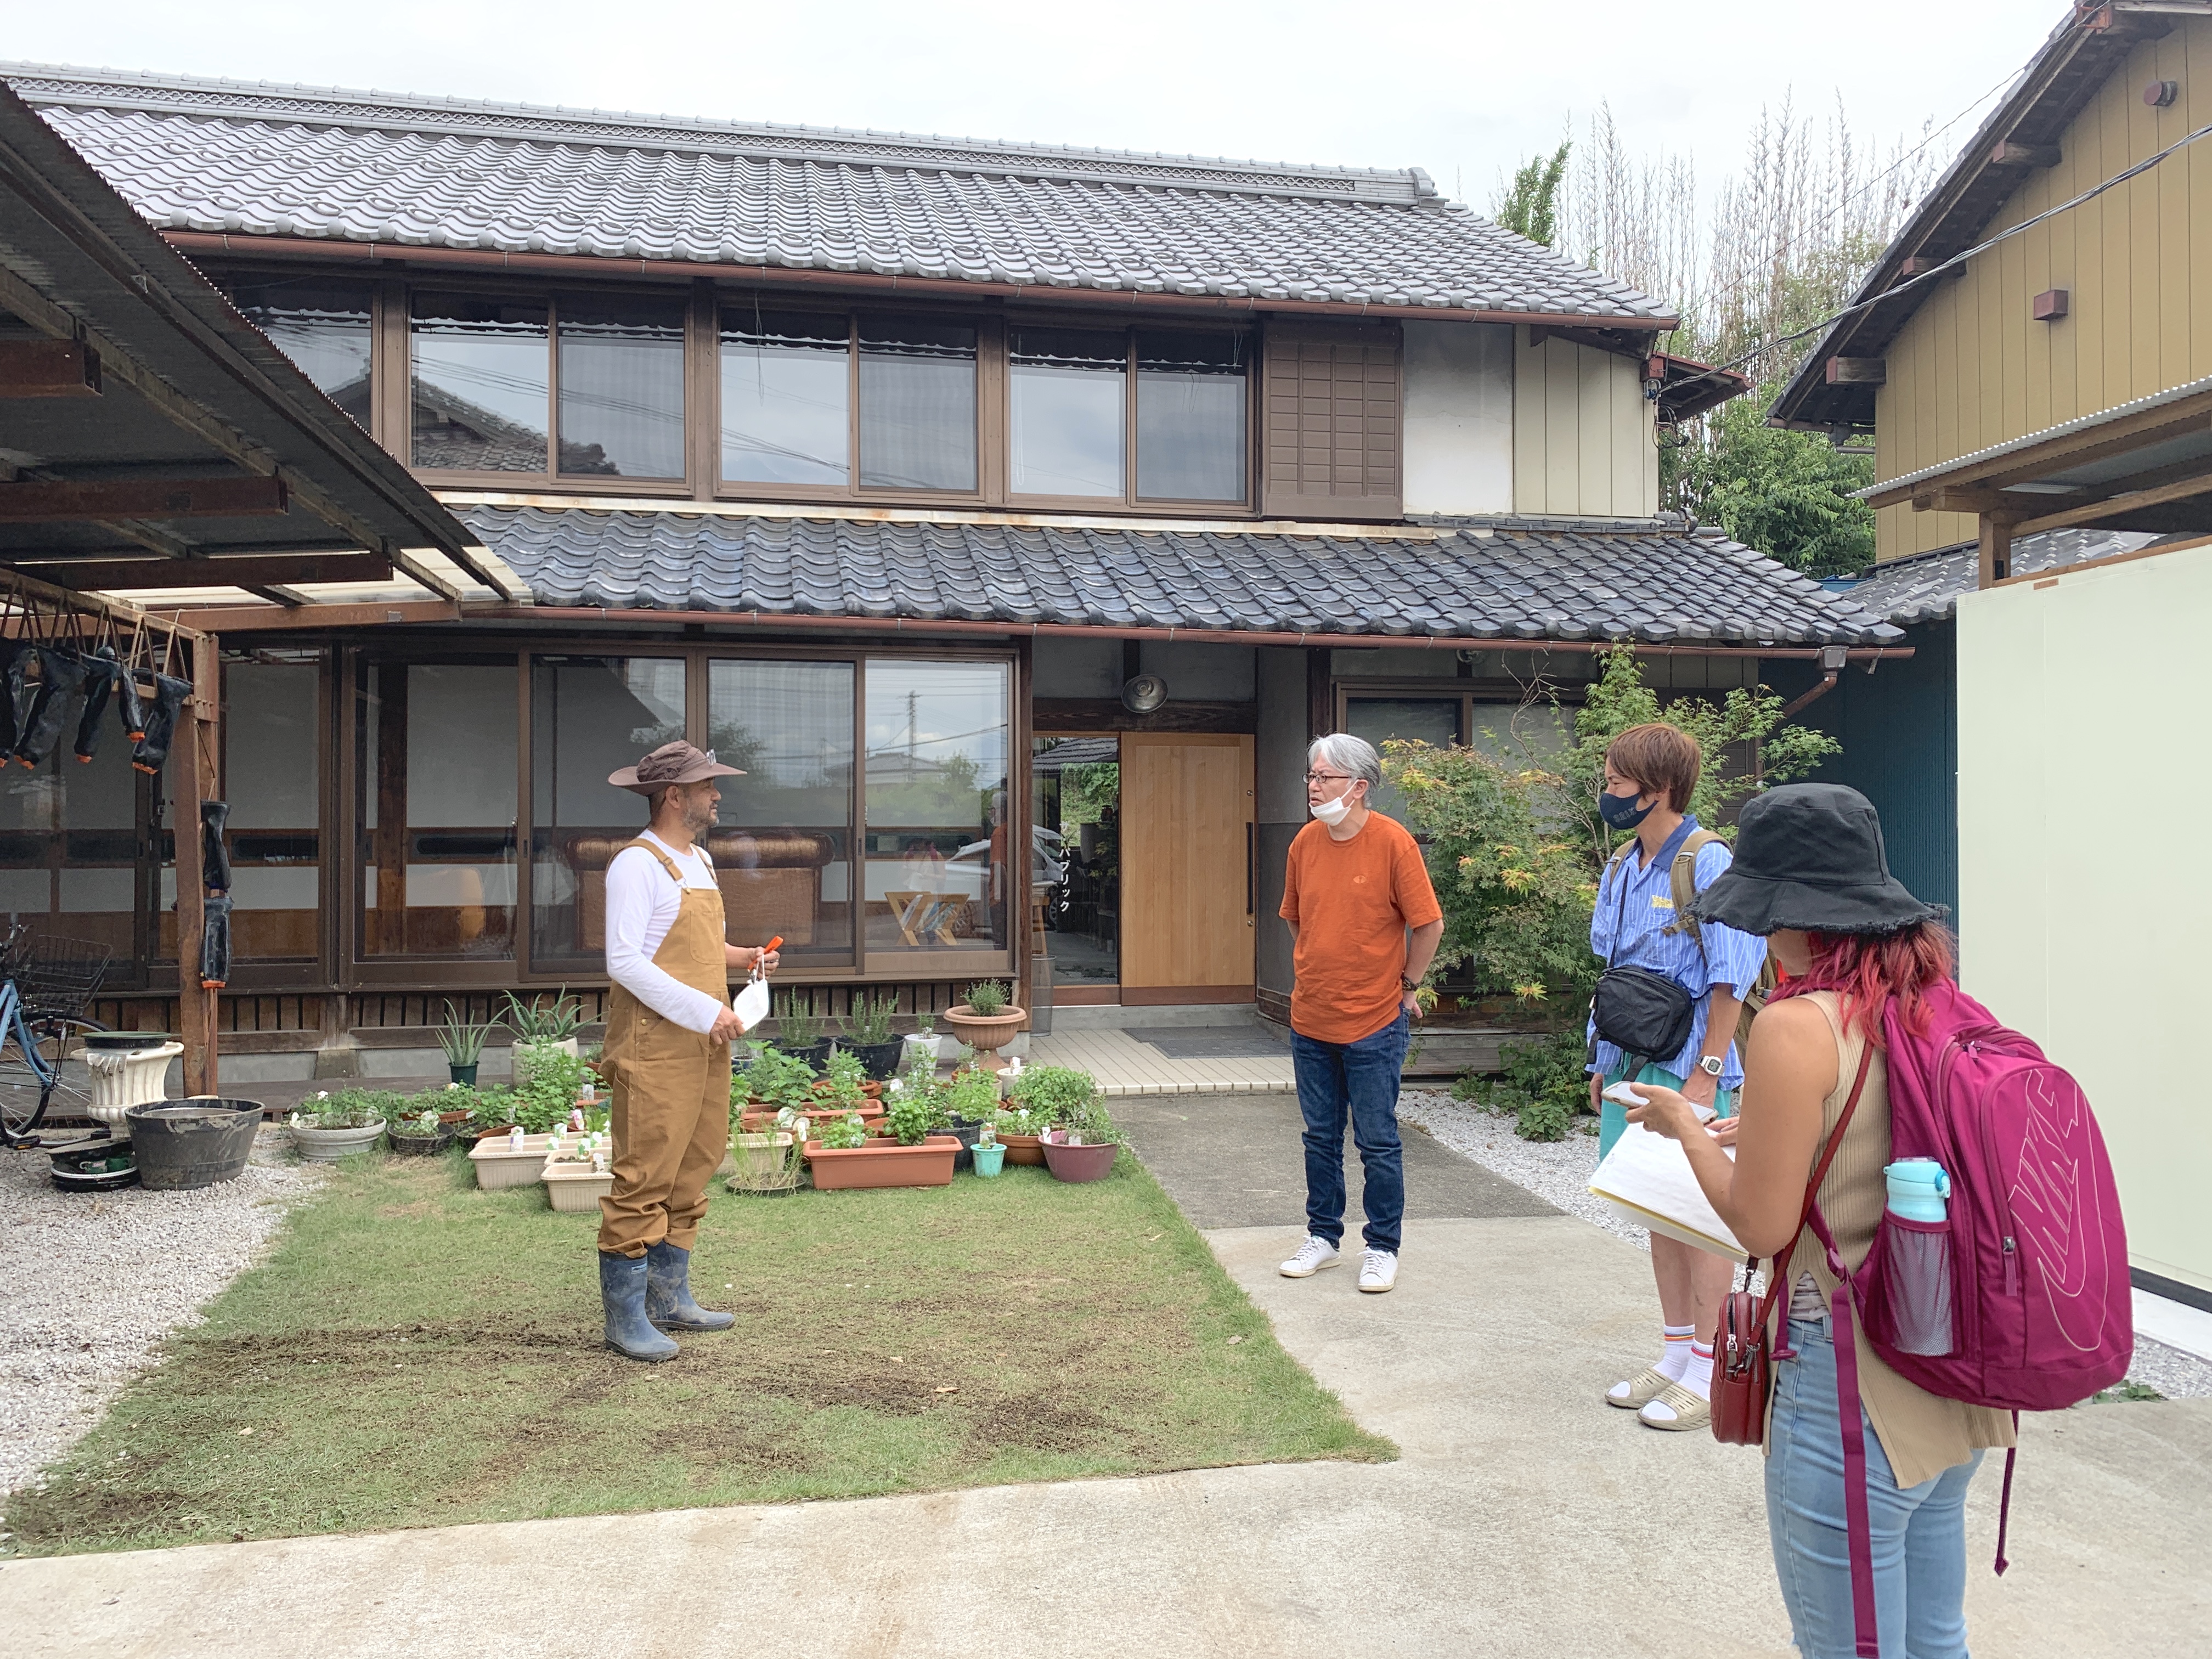 熊谷市で街の活性化と農福連携事業が担う日本の社会問題を考える。